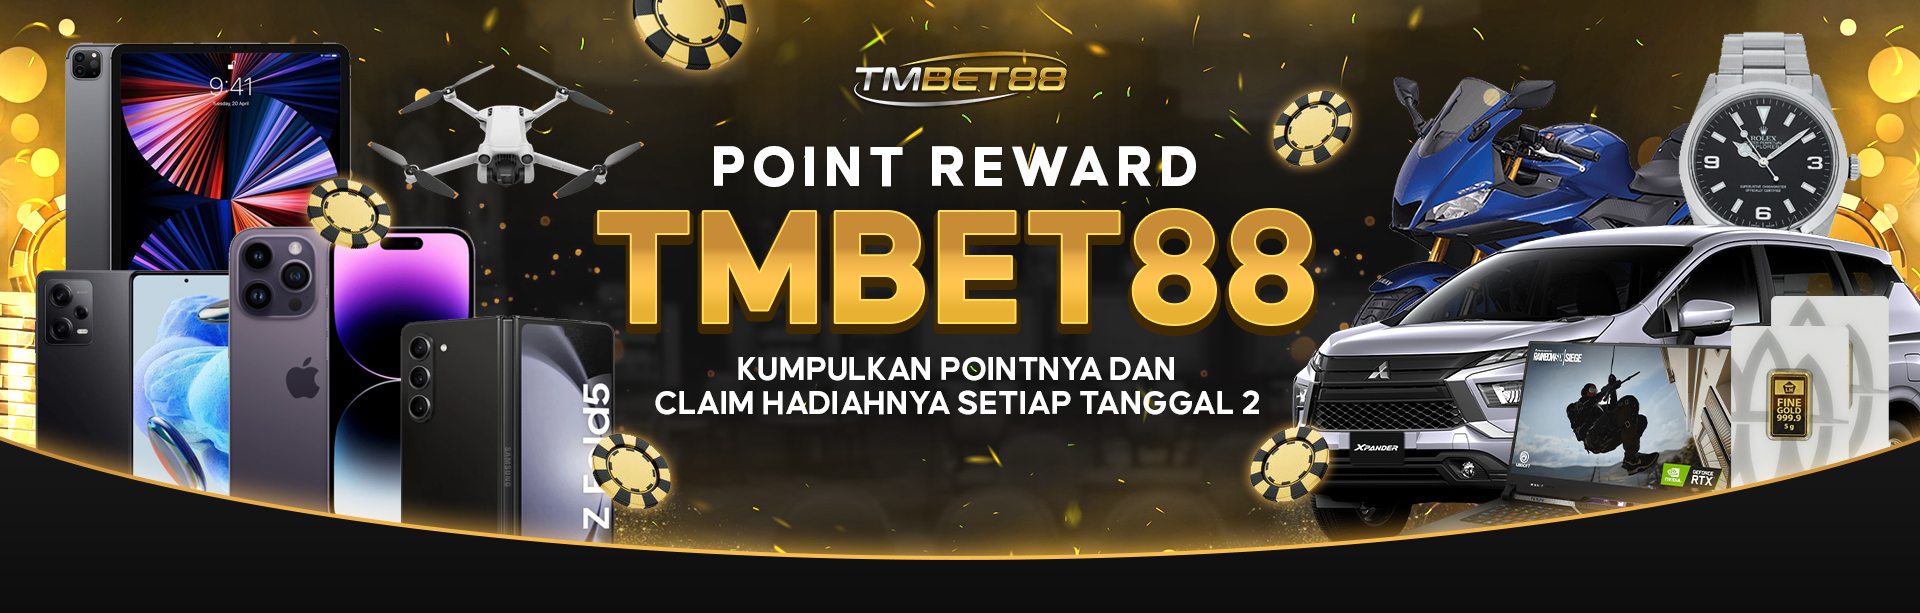 POINT REWARD TMBET88